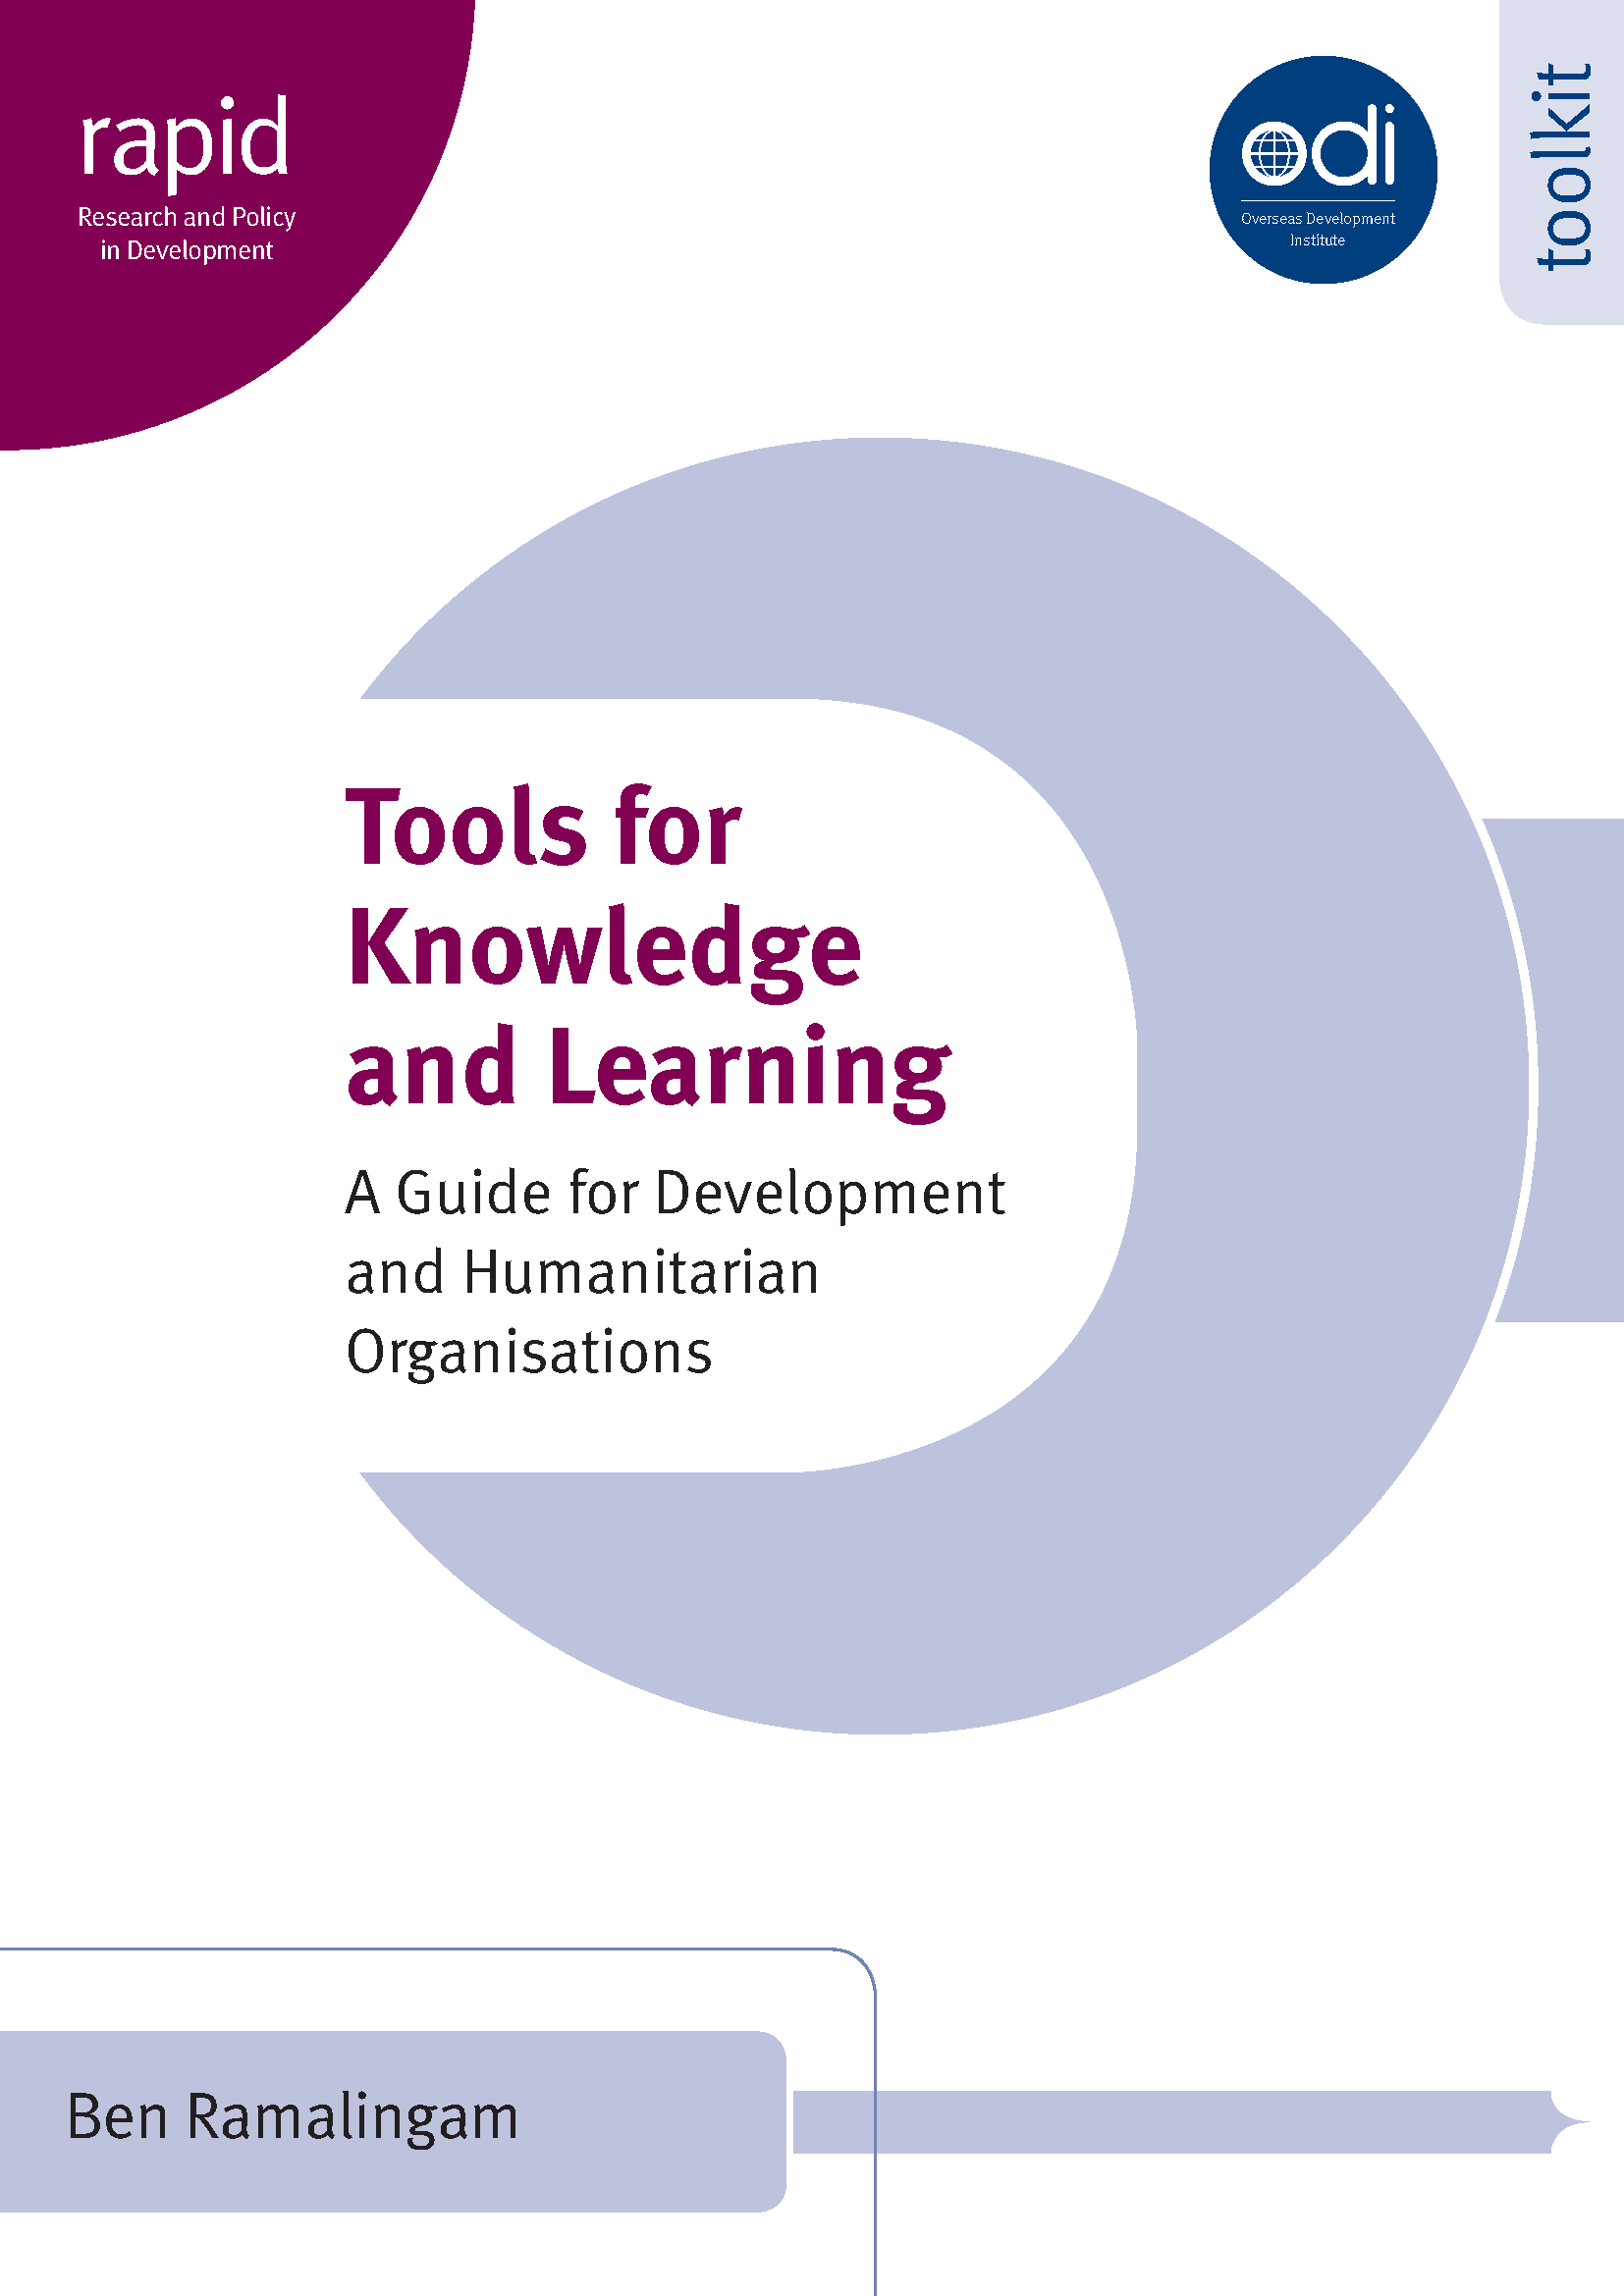 Une image de la couverture de la ressource "Outils pour la connaissance et l'apprentissage"